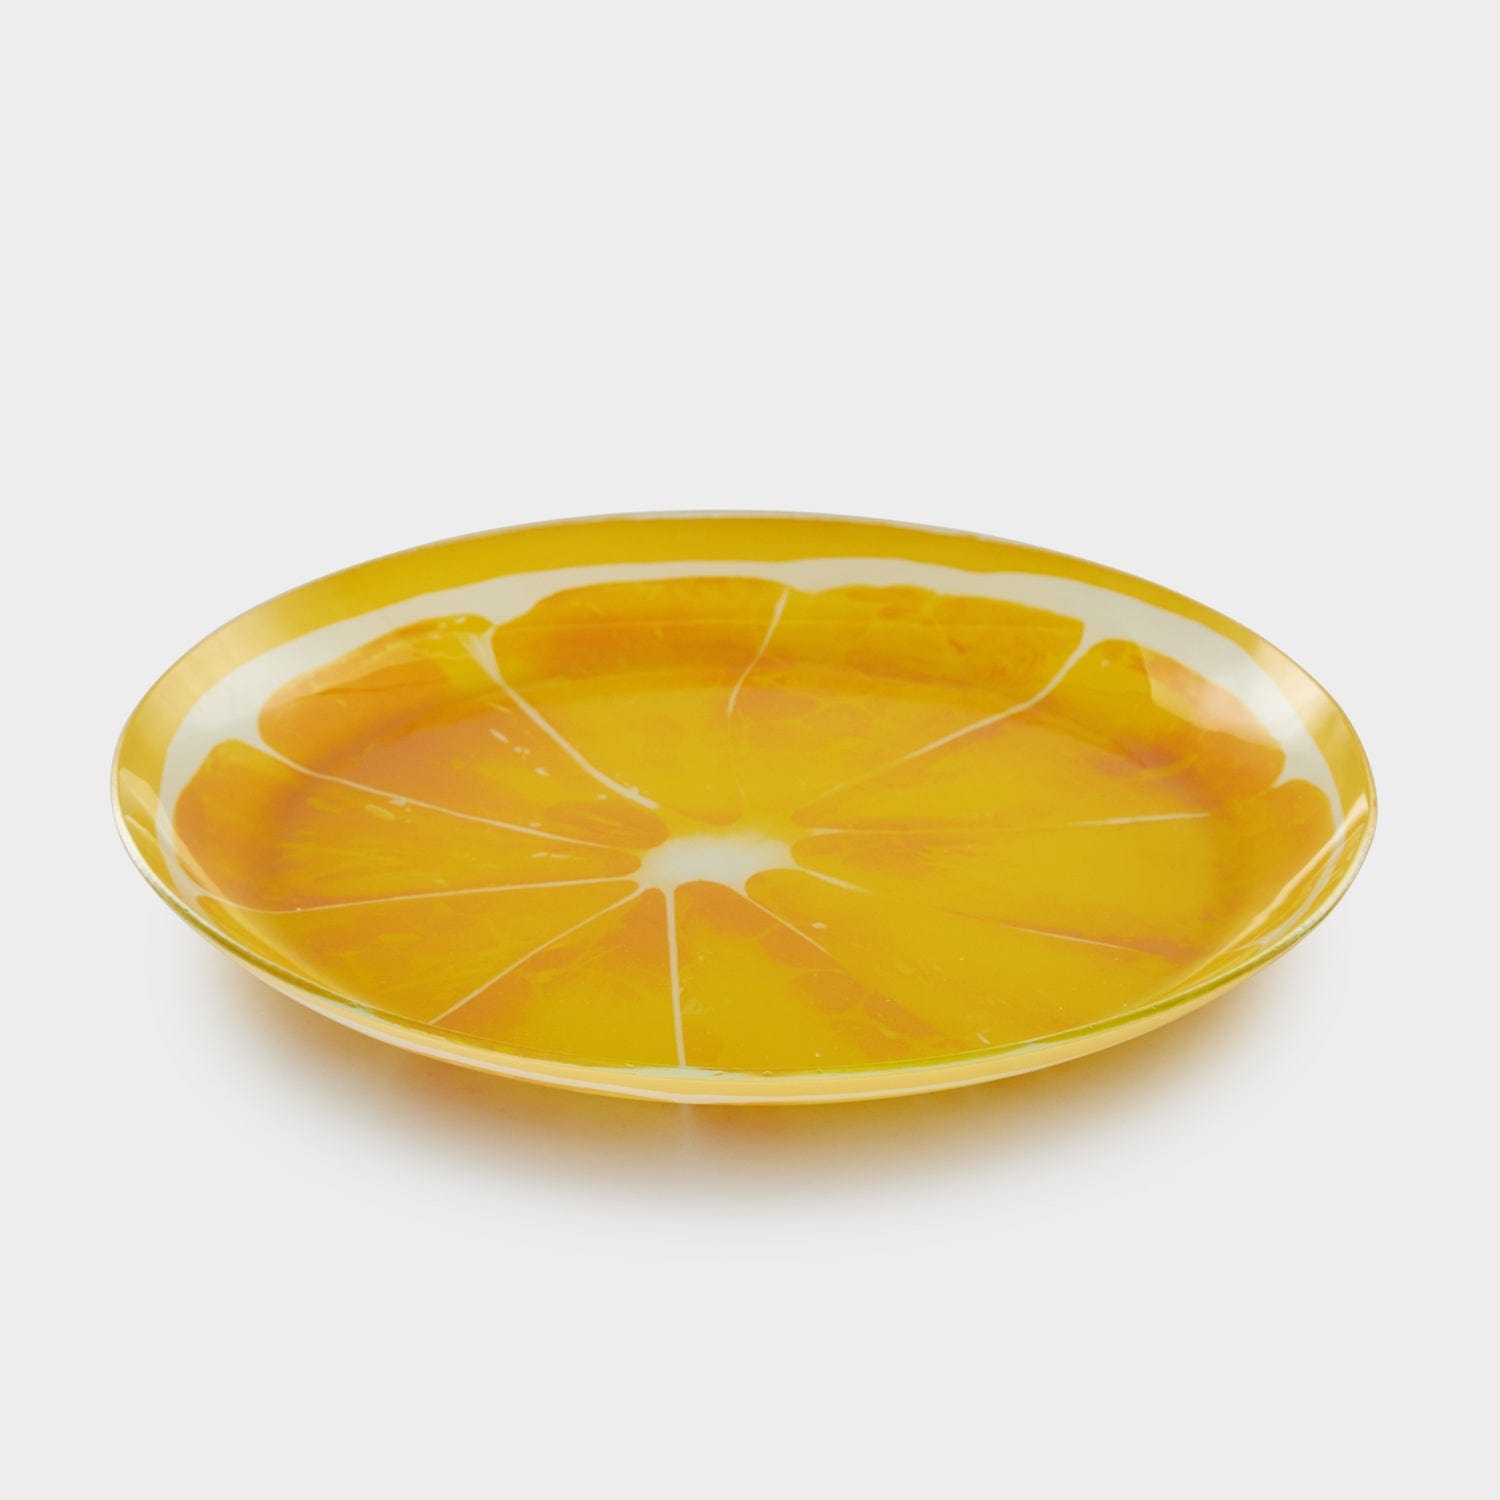 Red Butler Half Plates Designer Glass Snack Plate - Lemon | 6pcs set DDP20A1 Redbutler